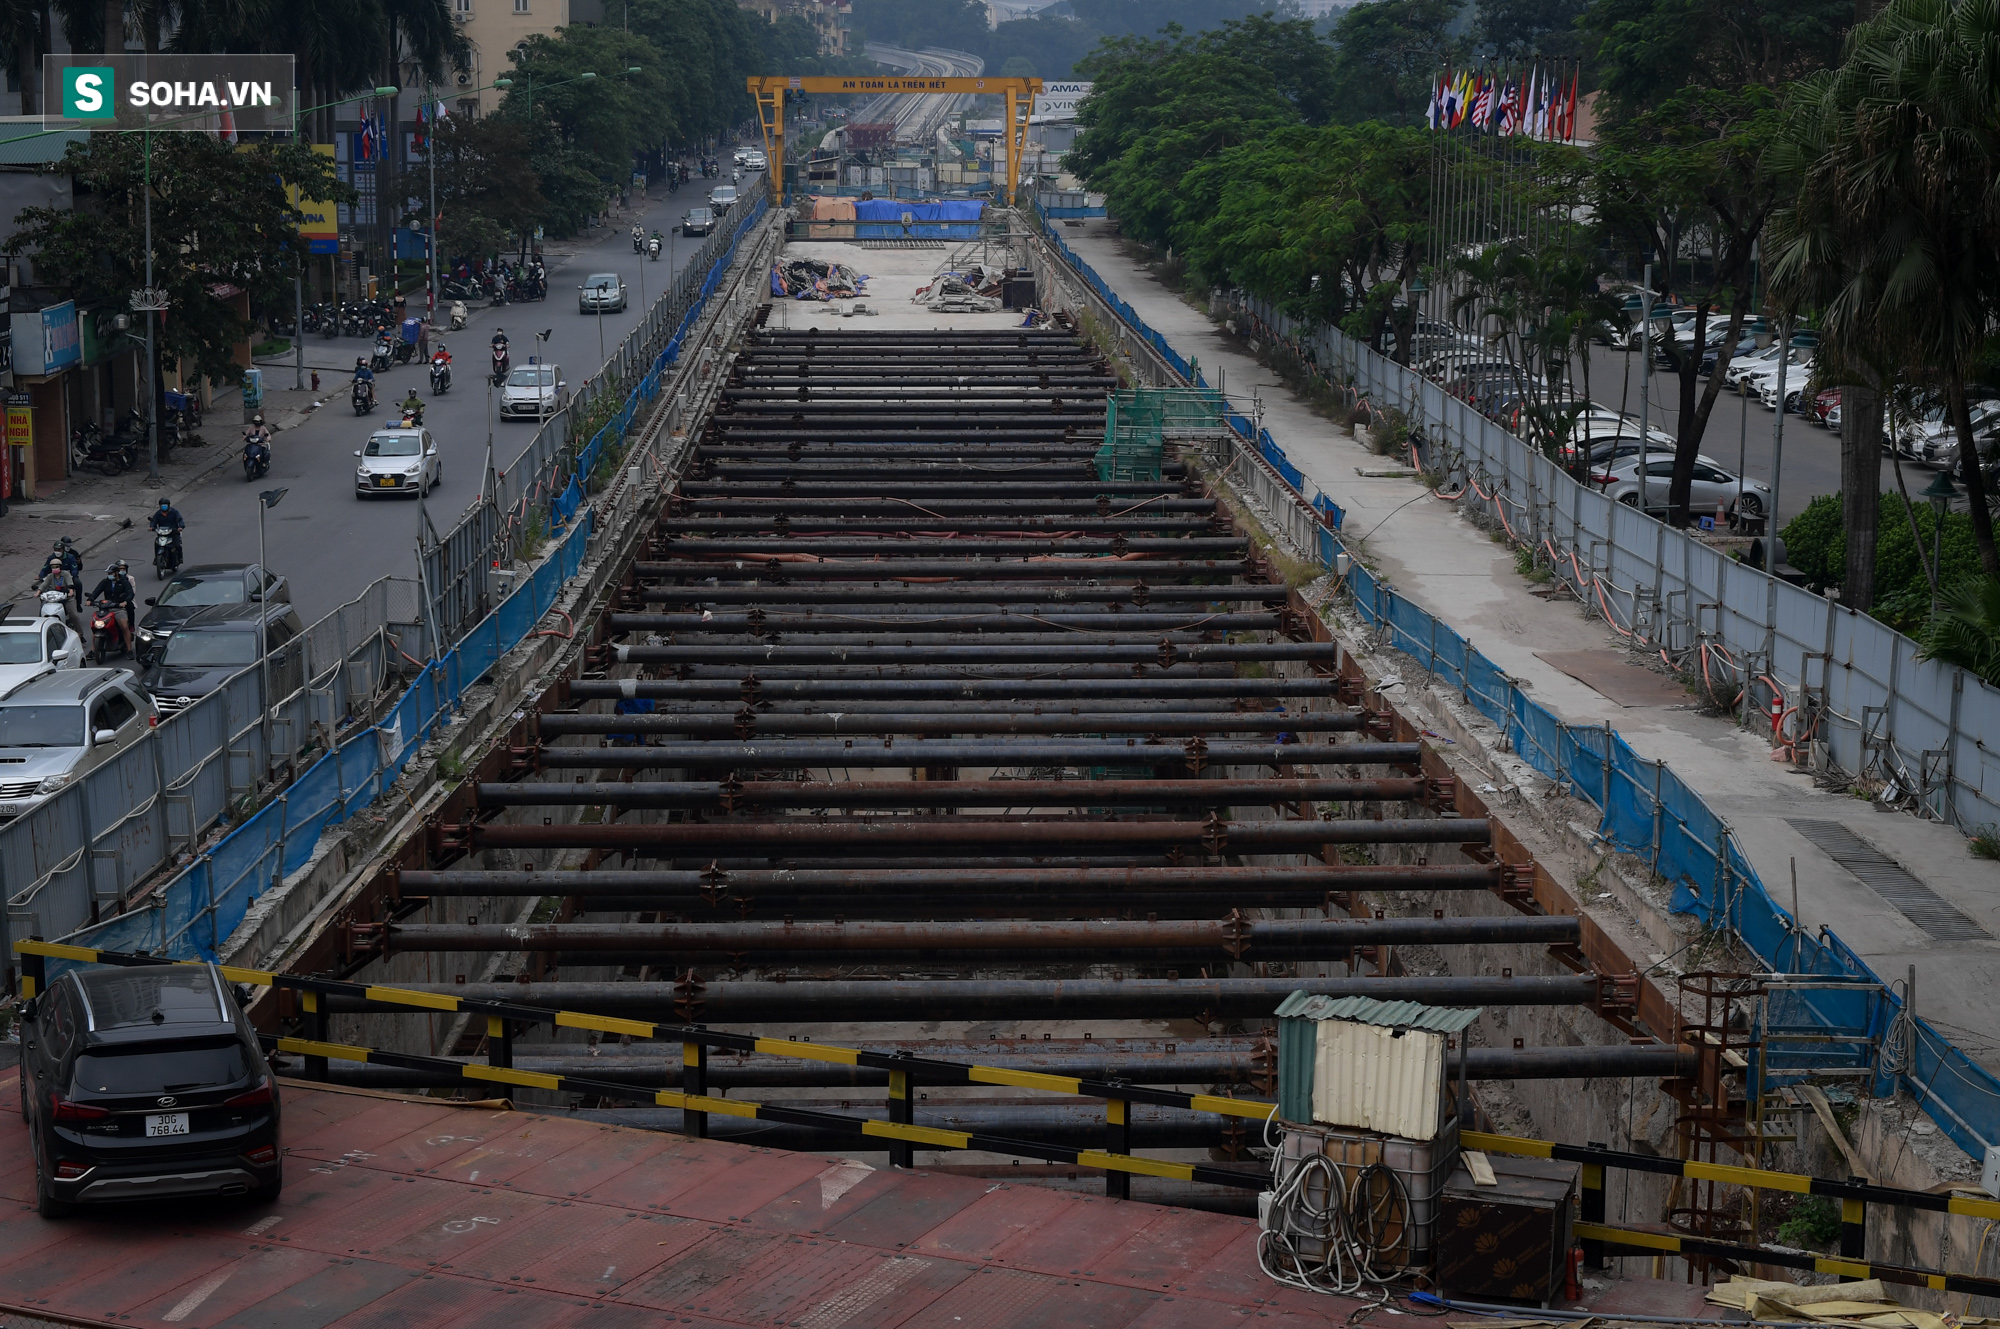 Xây trước tuyến Cát Linh-Hà Đông 1 năm, dự án Metro Nhổn-Ga Hà Nội vẫn chưa xong mặt bằng - Ảnh 9.